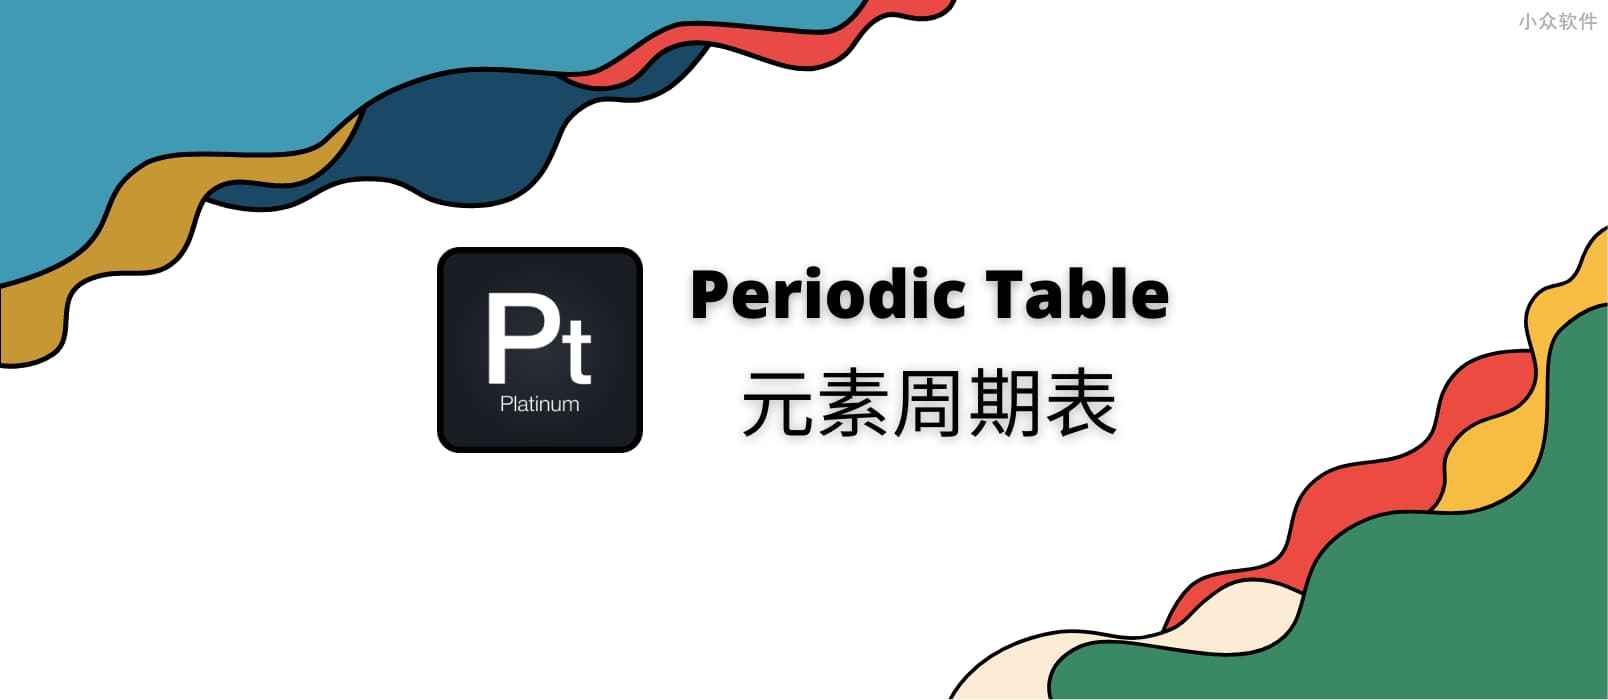 元素周期表 - 在 Android、iPhone、iPad 上，超过 4.8 评分的免费中文元素周期表应用